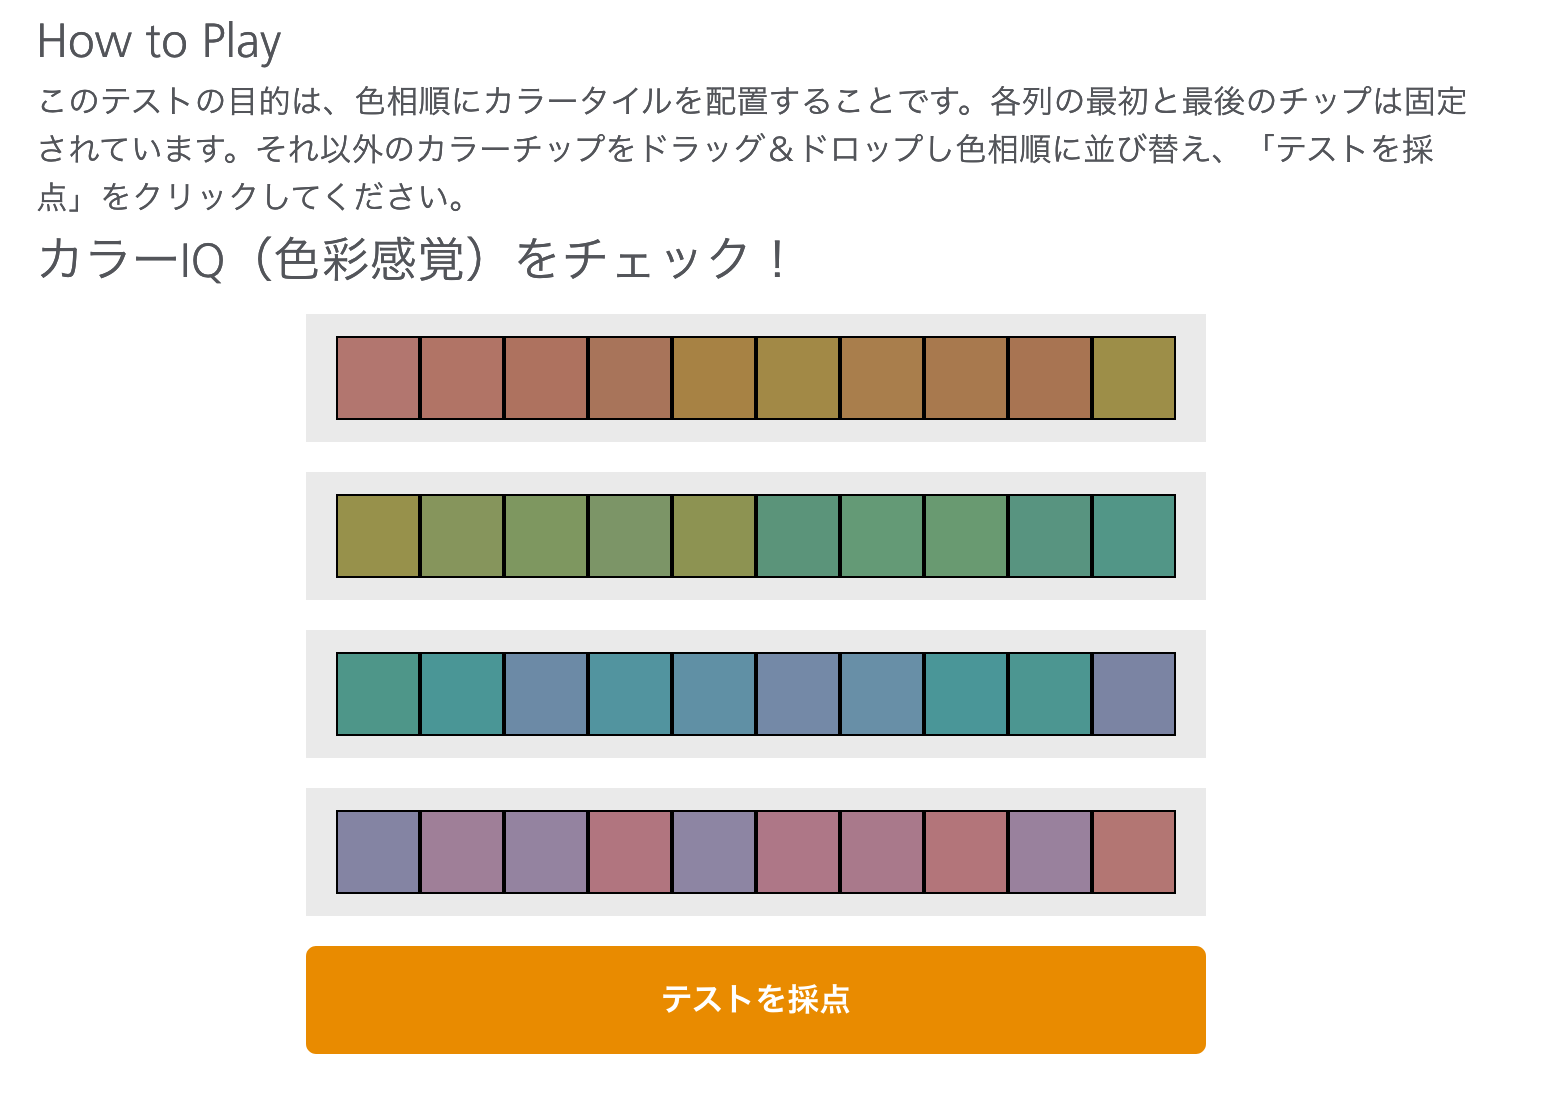 ホームページ制作で色は大事な会社のポイントです。